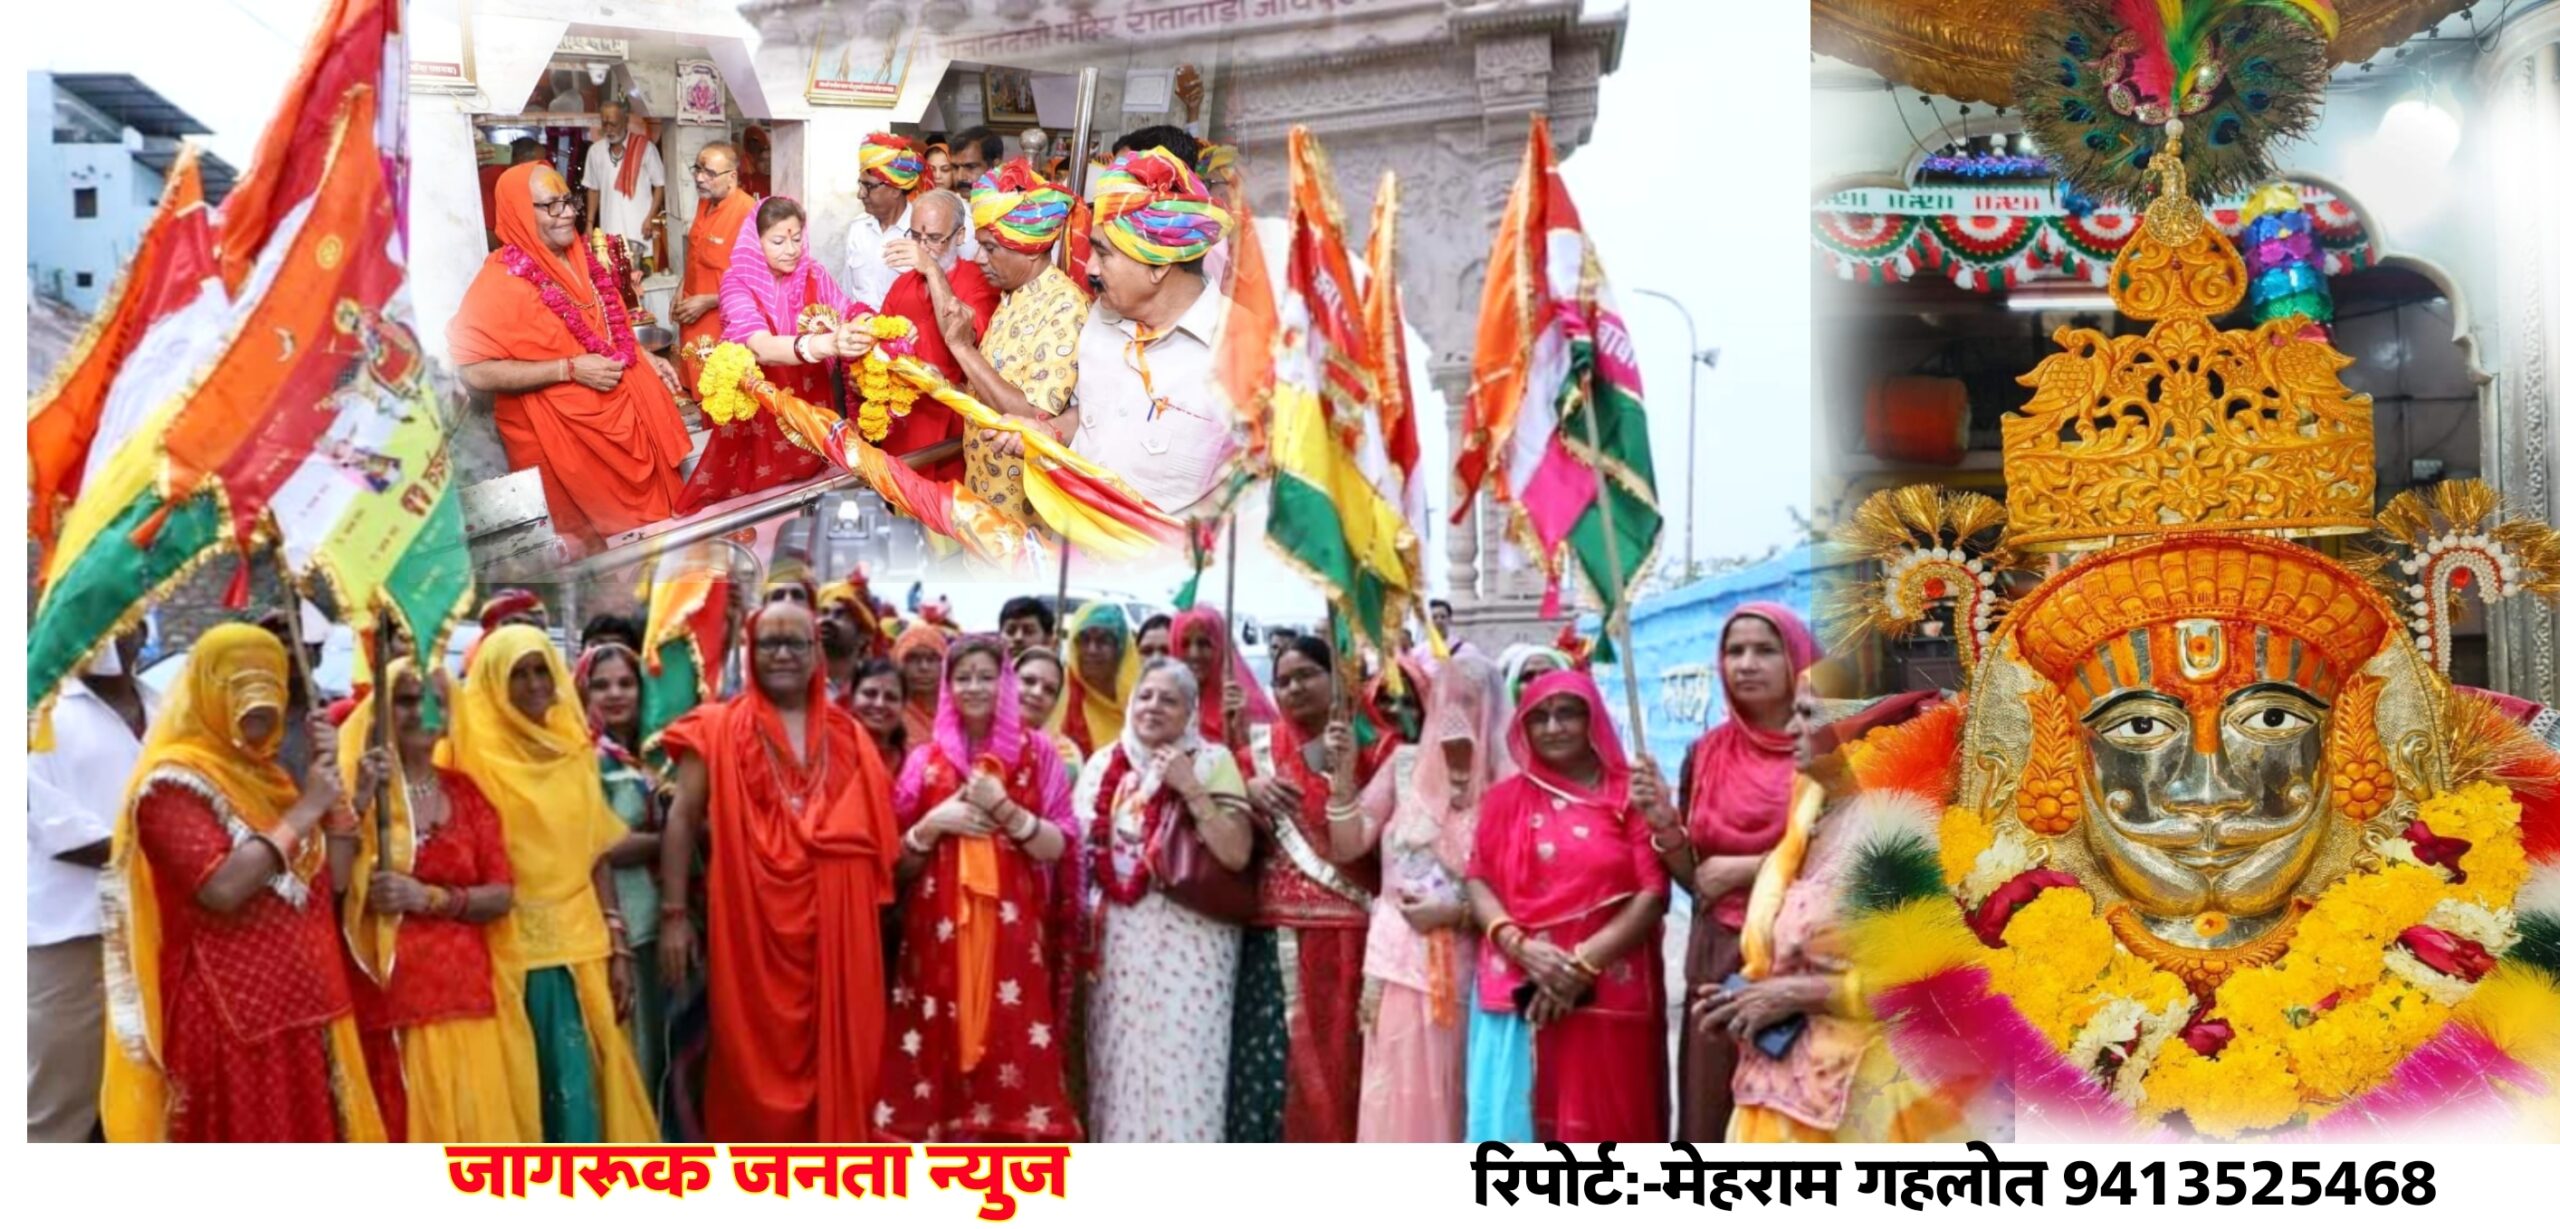 जोधपुर राजघराने की महारानी हेमलता राजे बाबा रामदेवजी के दरबार में दर्शनार्थ पैदल यात्रा 1 से करेंगी शुरू।